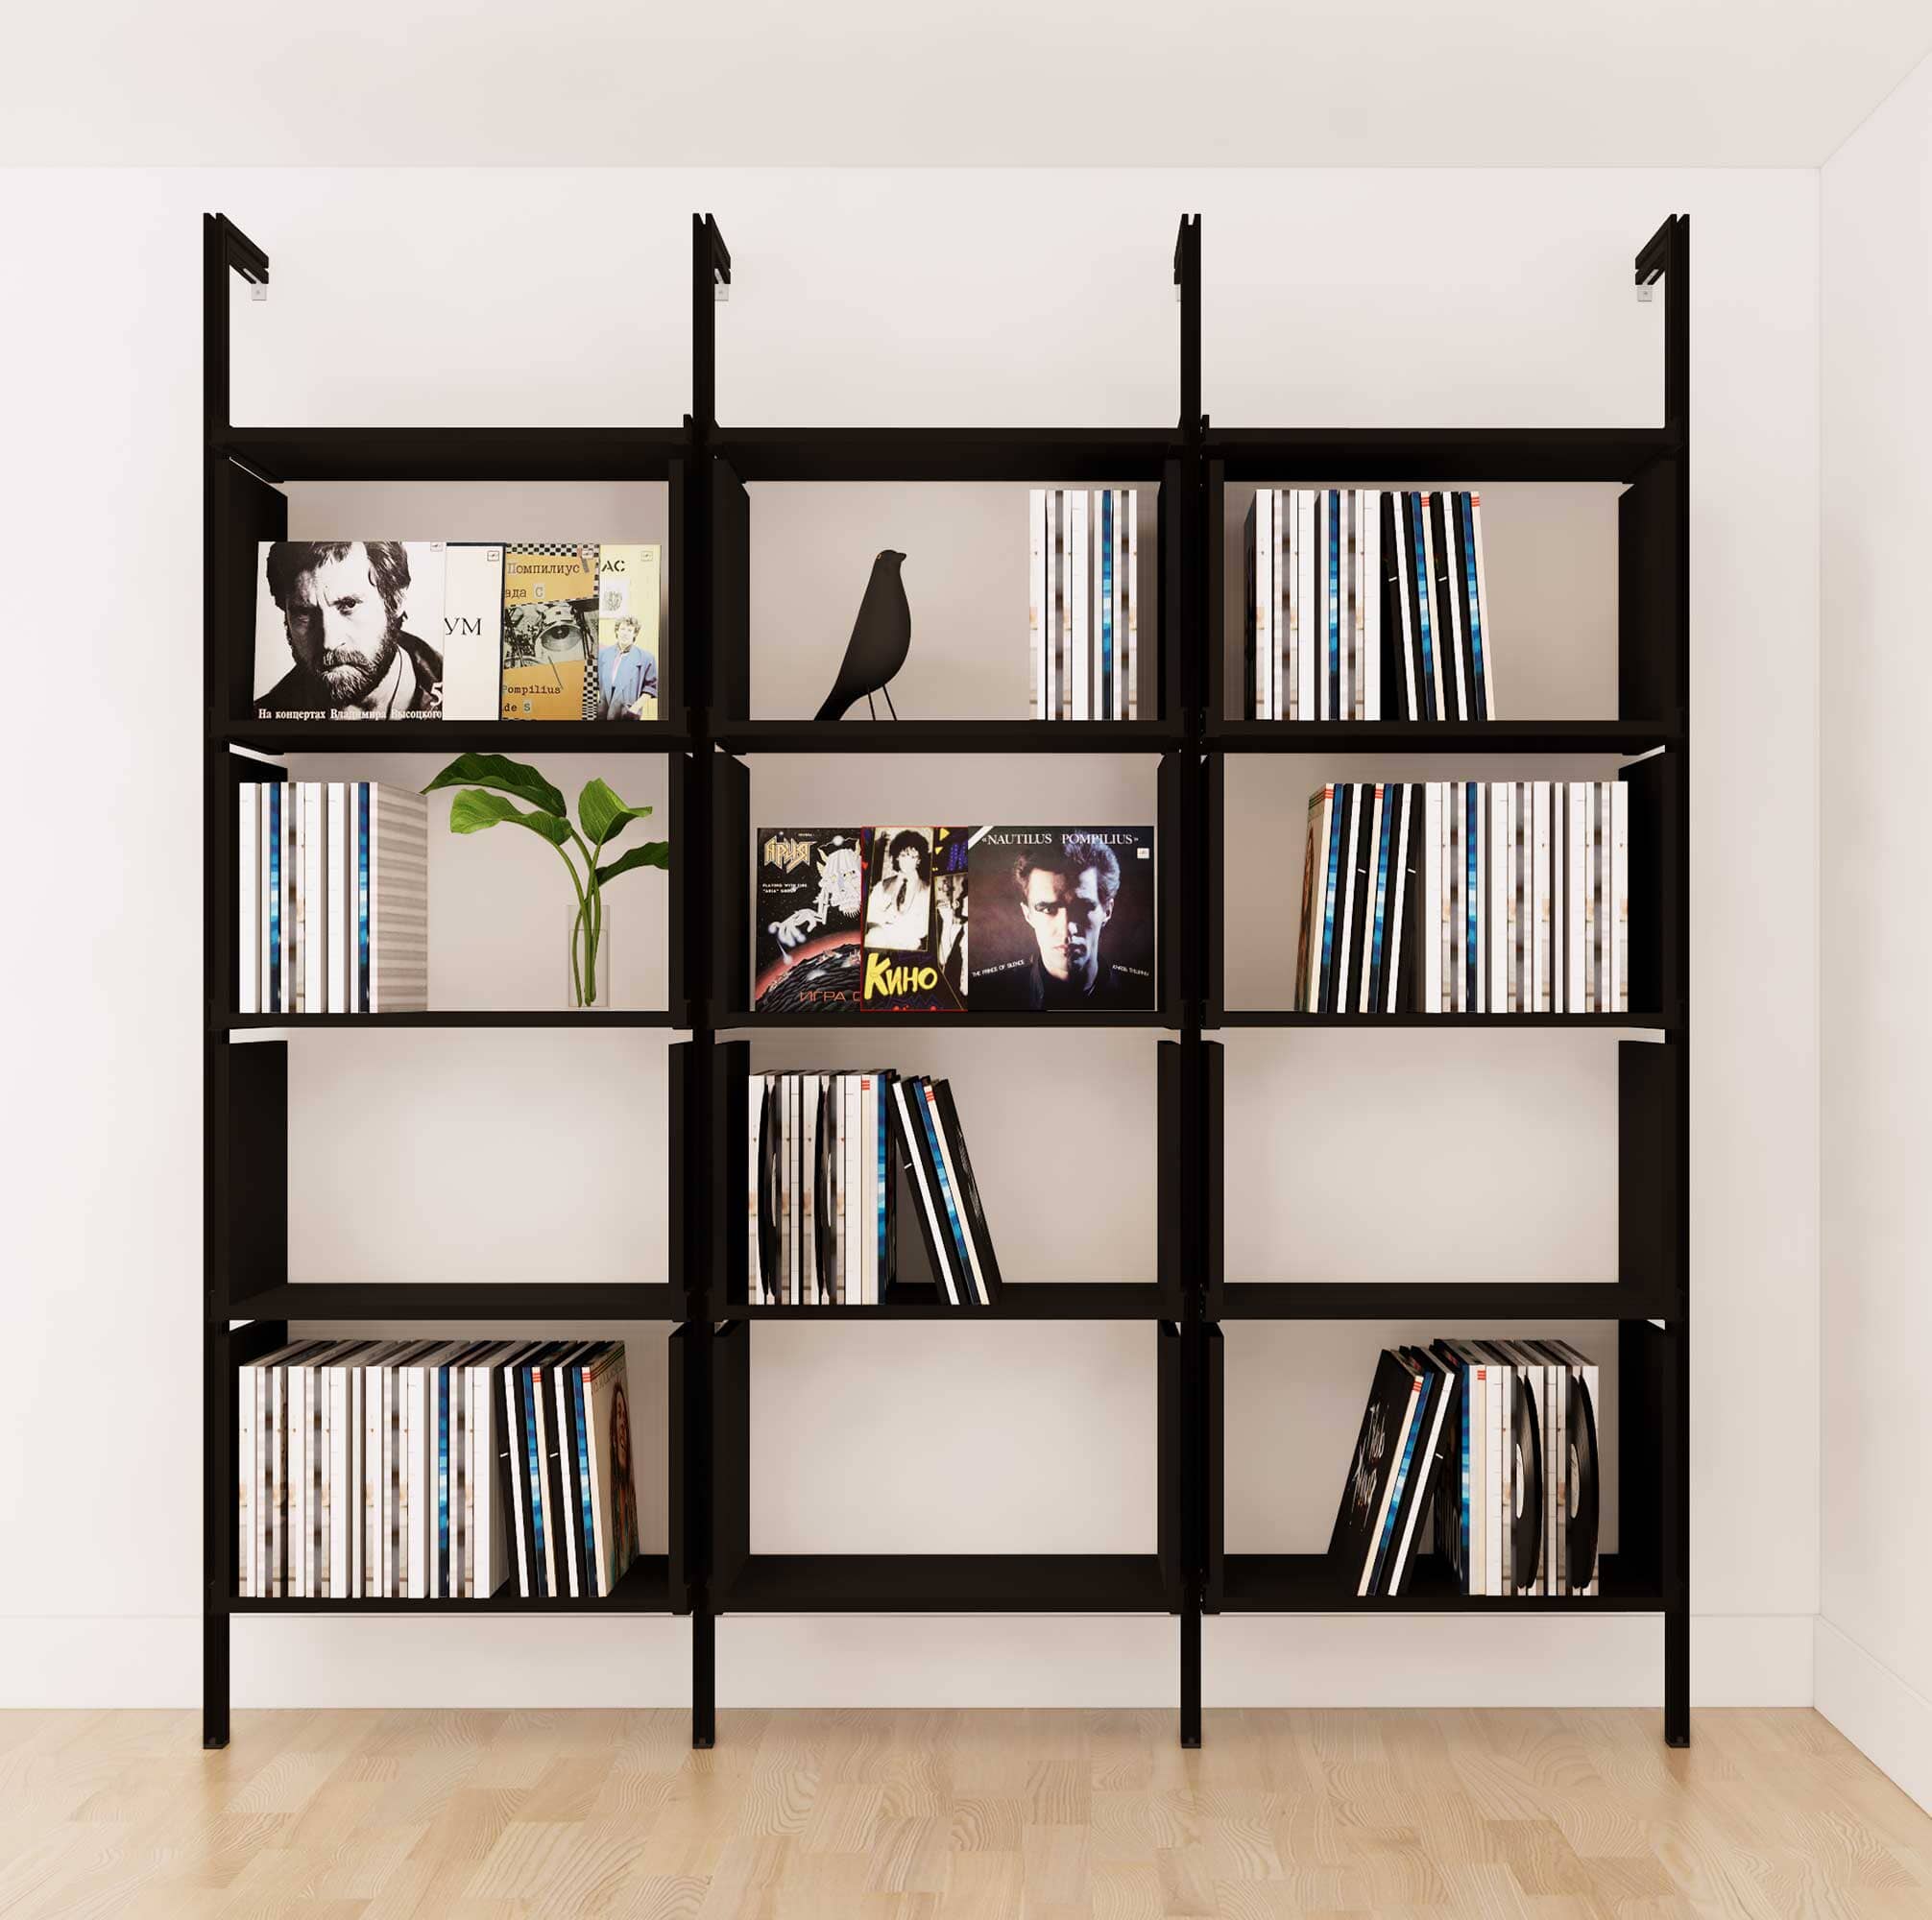 Vinyl Storage Series - Organize your LP's in Style